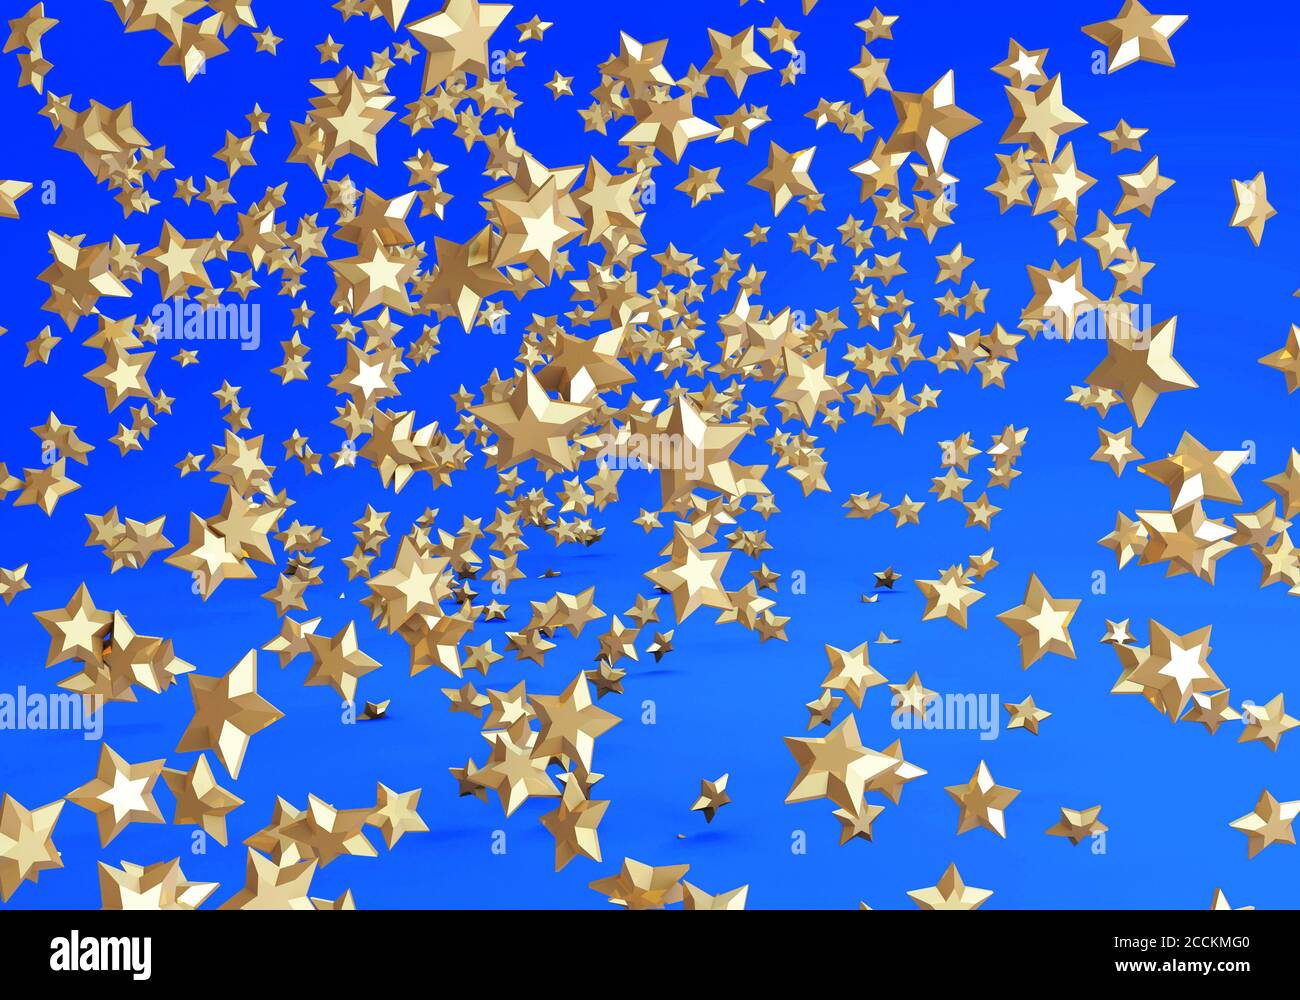 concept de rendu 3d de milliers d'étoiles d'or sur un arrière-plan bleu Banque D'Images